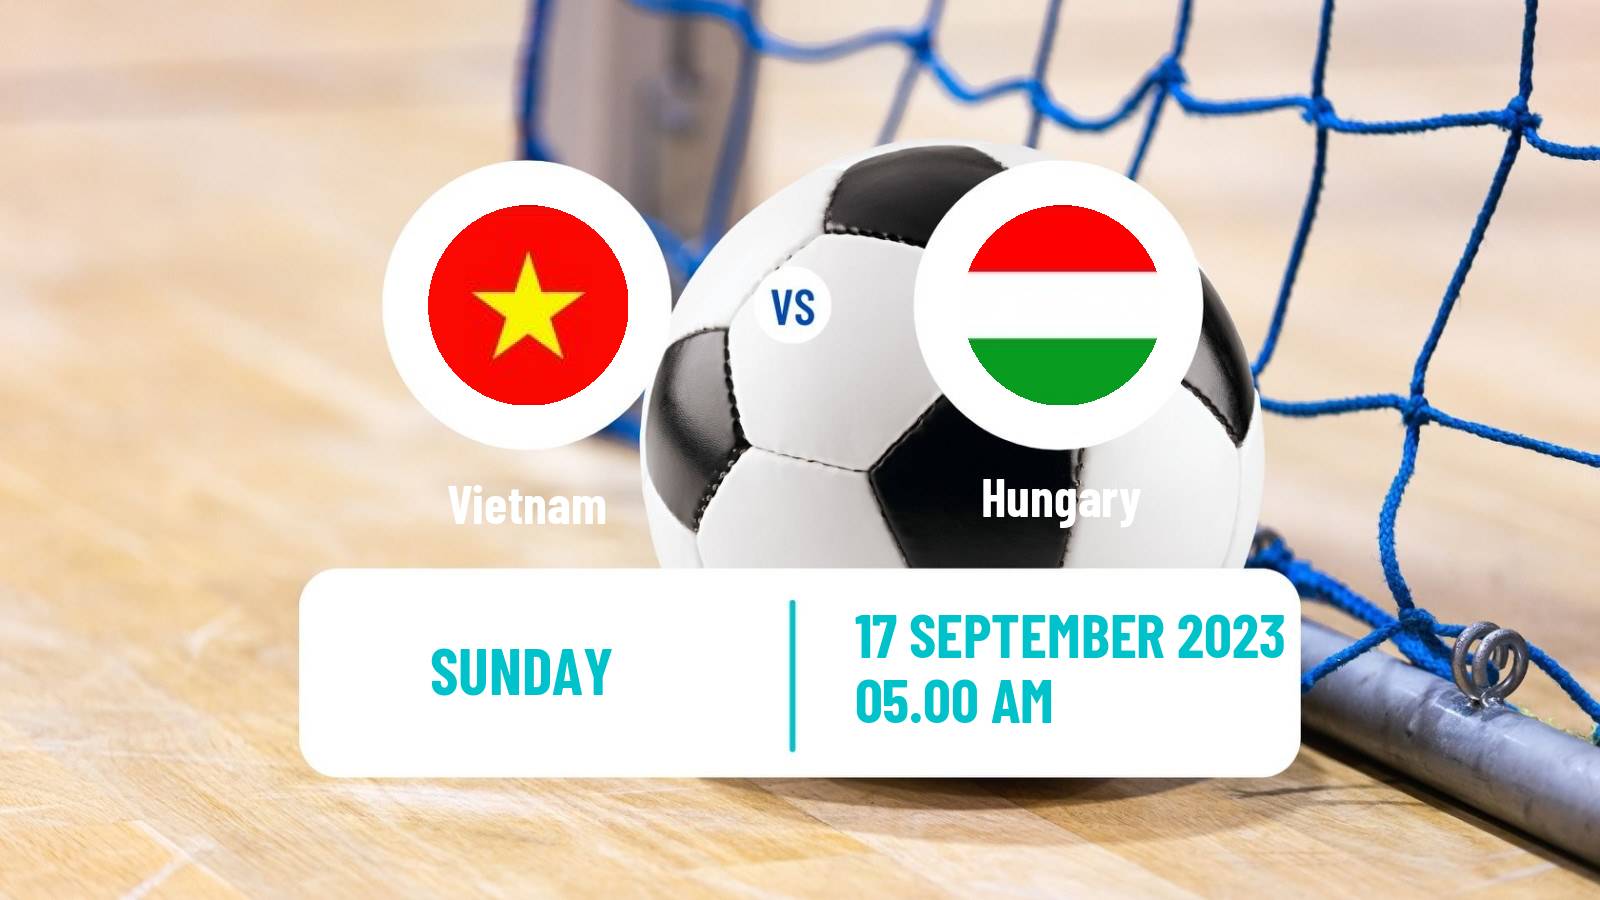 Futsal Friendly International Futsal Vietnam - Hungary